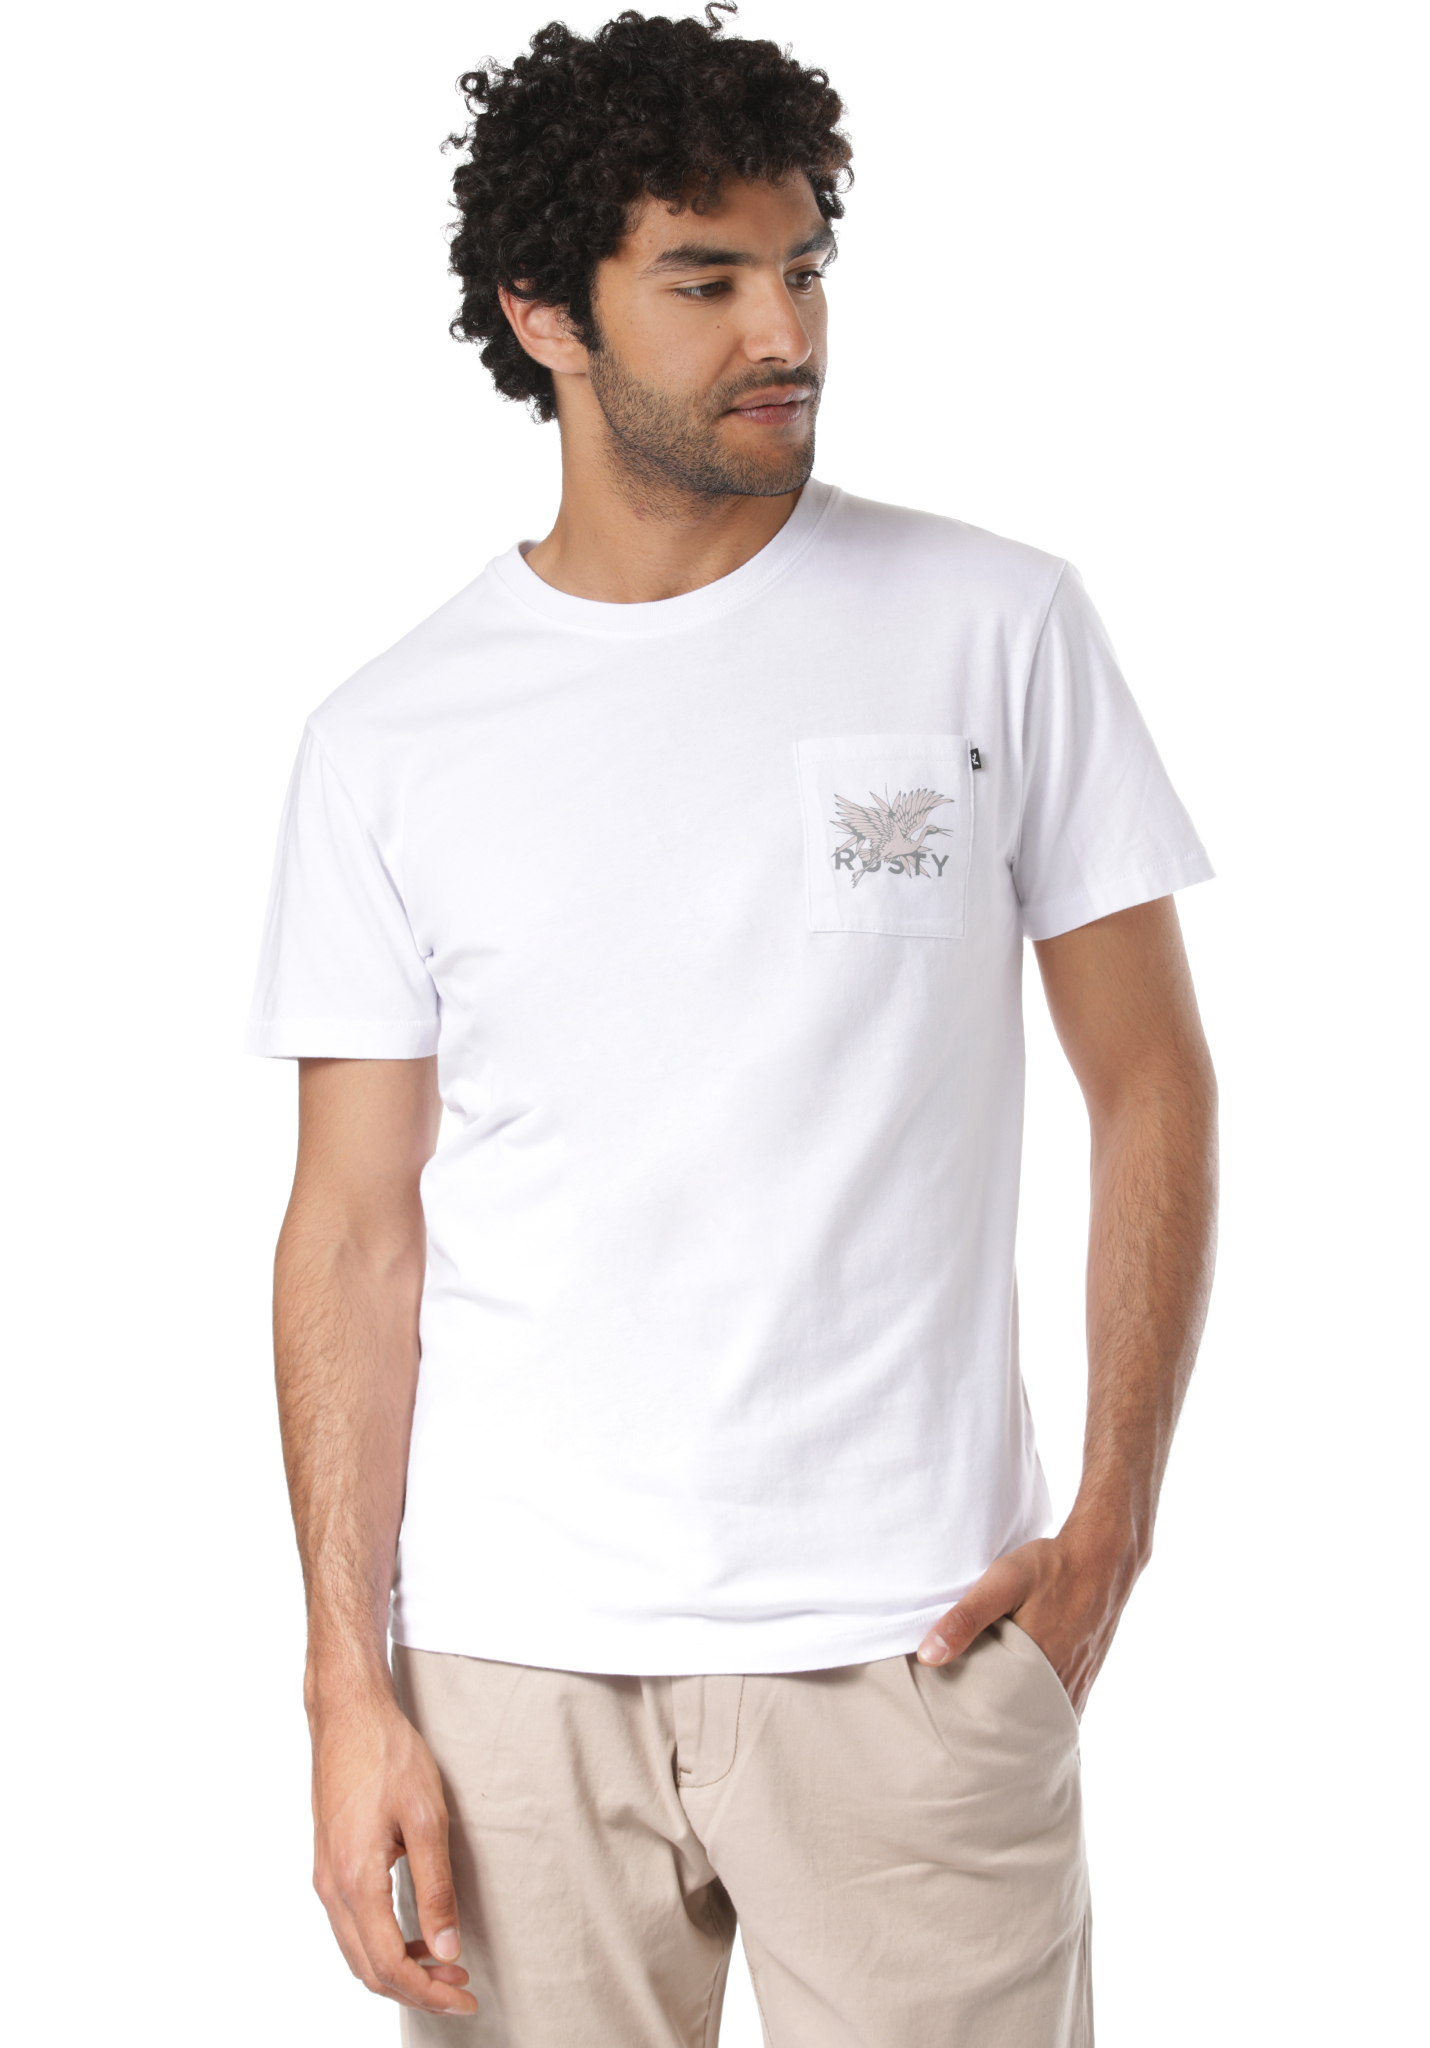 Rusty Chromium T-Shirt white S